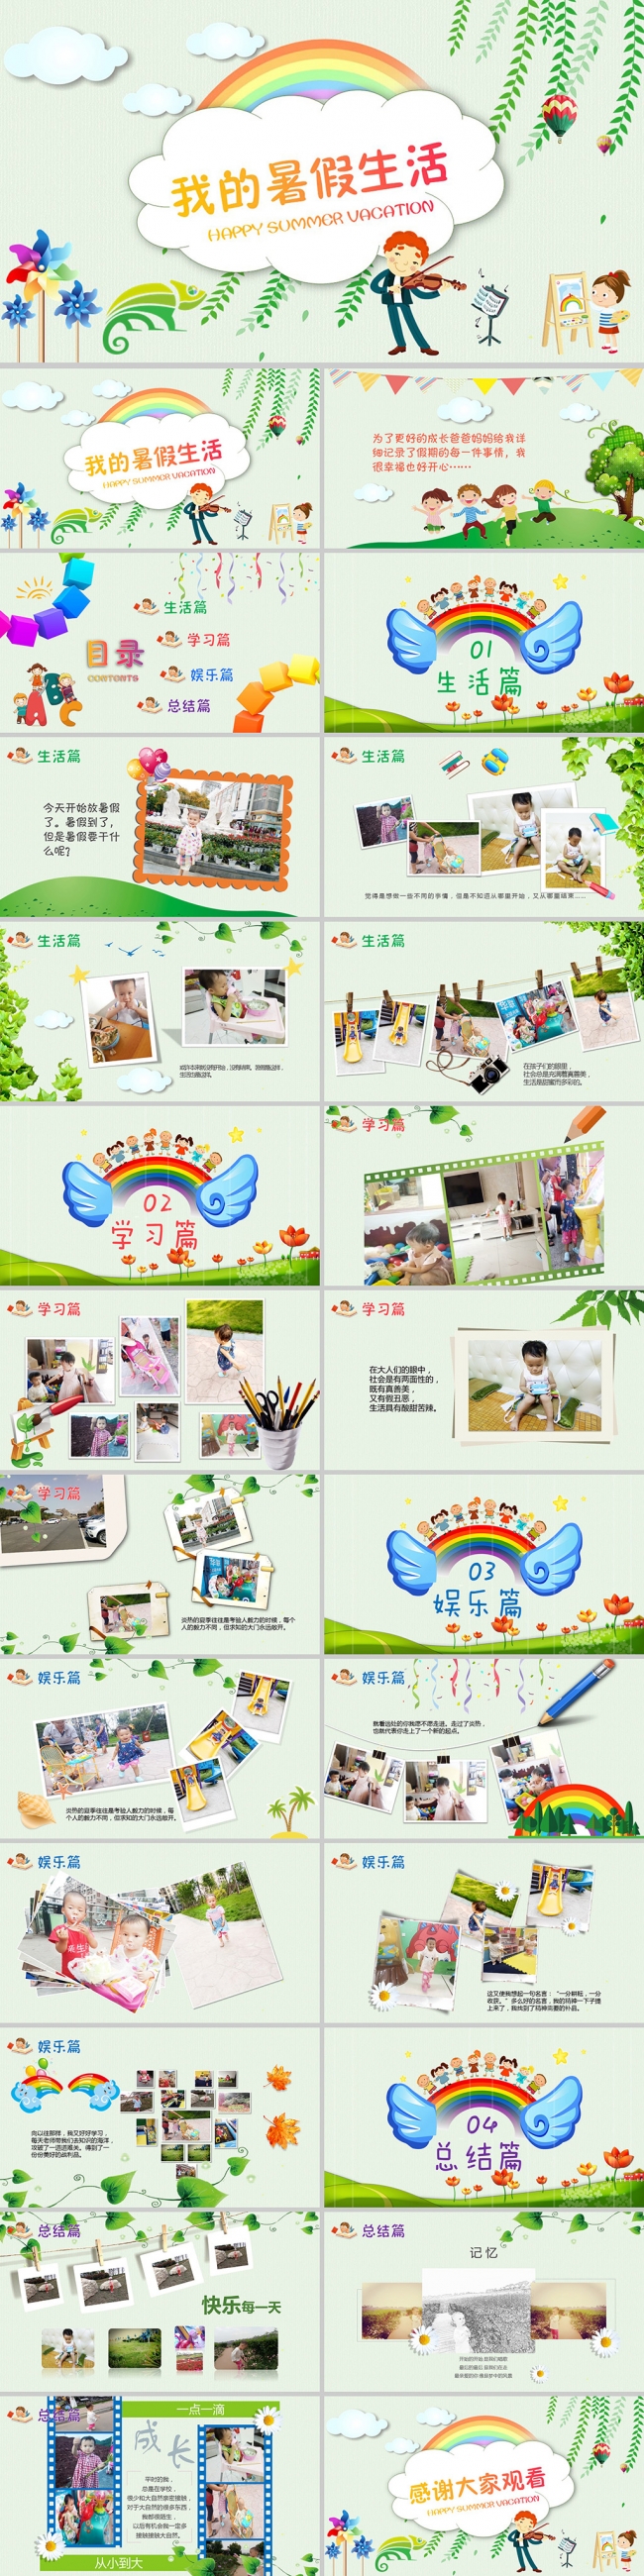 小学生我的暑假生活幼儿园儿童成长纪录纪念相册生日快乐ppt